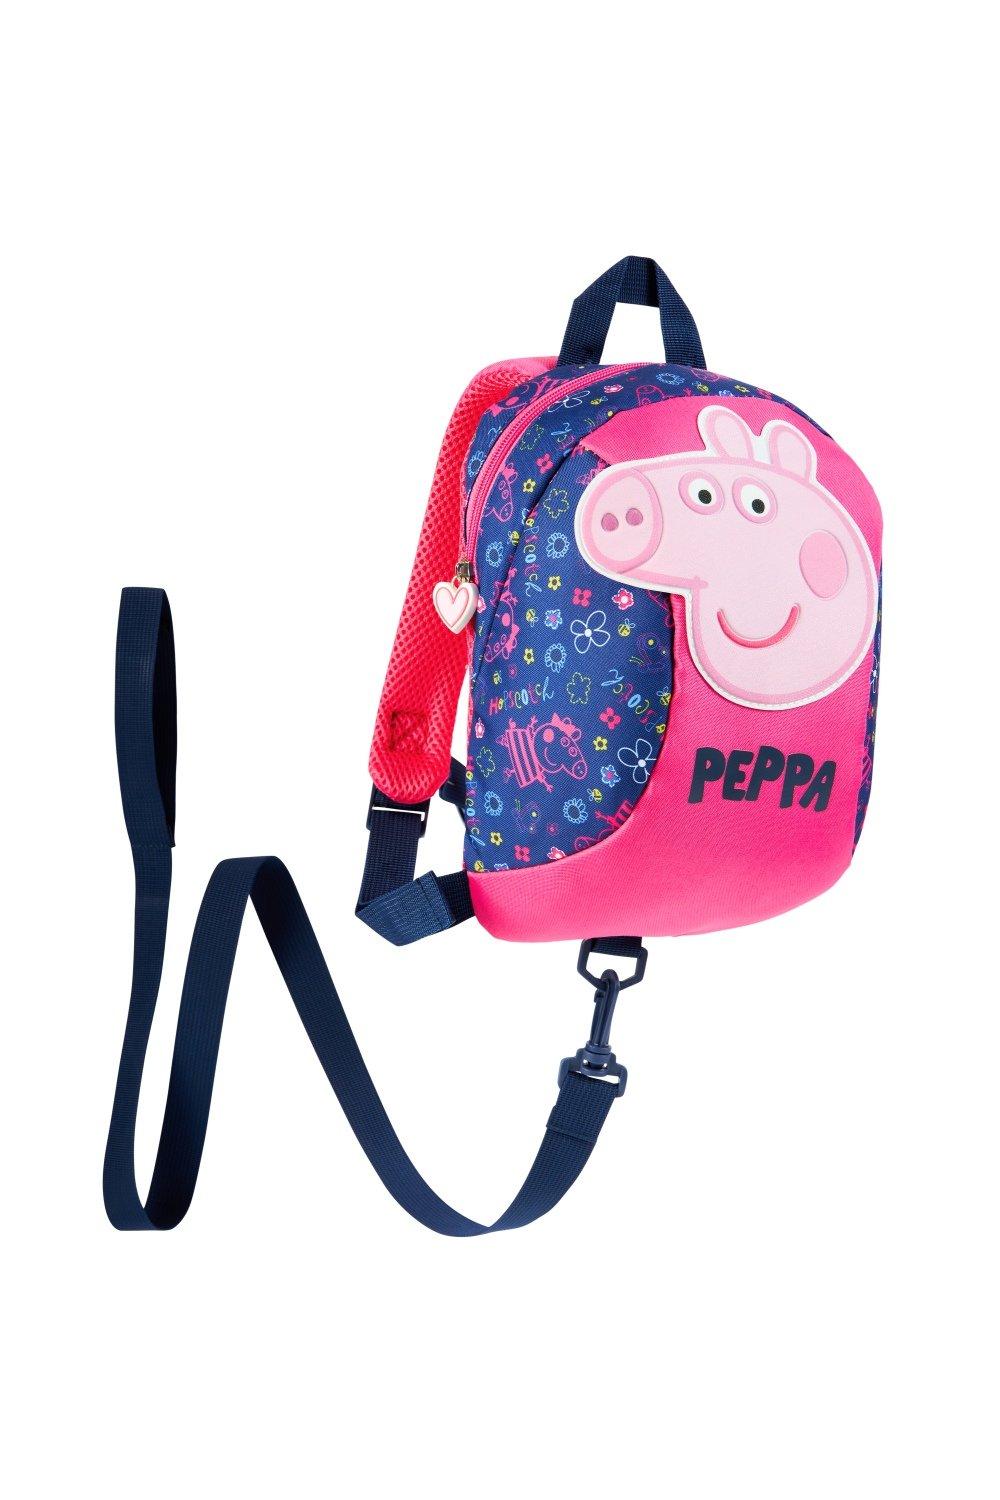 Рюкзак для малышей с поводьями Peppa Pig, мультиколор рюкзачок свинка пеппа малый cчастье